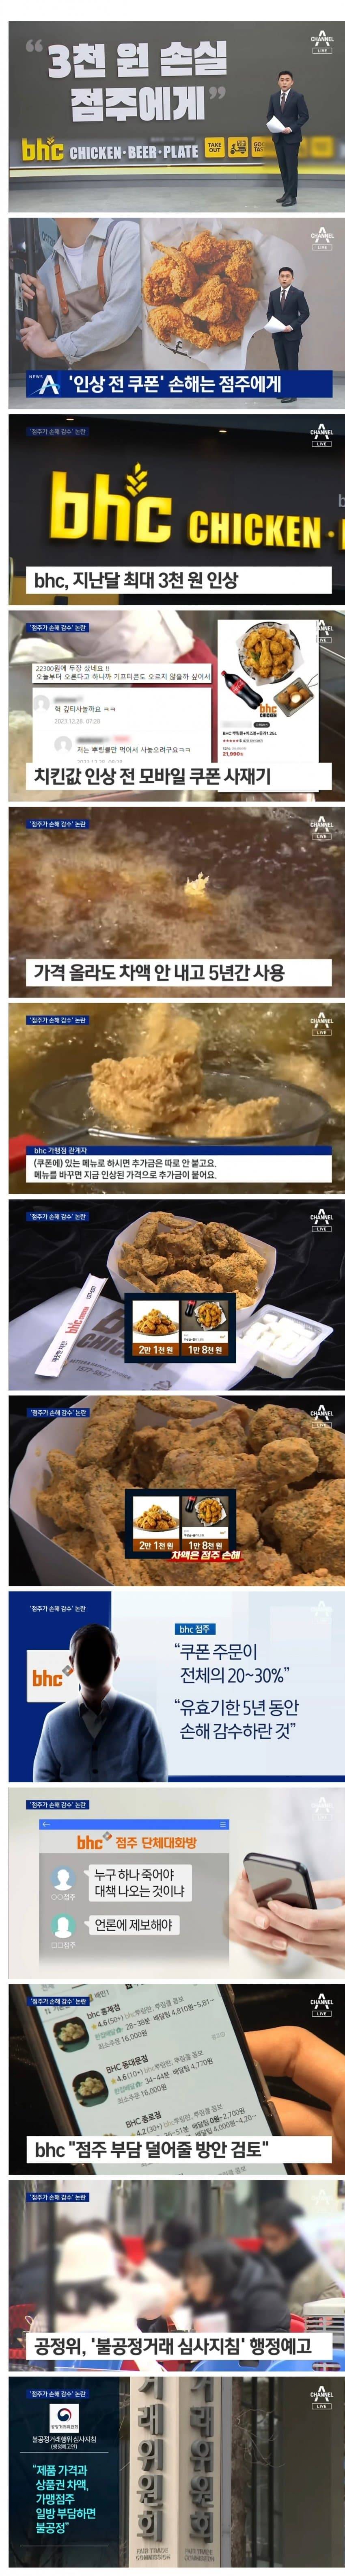 치킨 가격 3000원 인상한 bhc의 꼼수